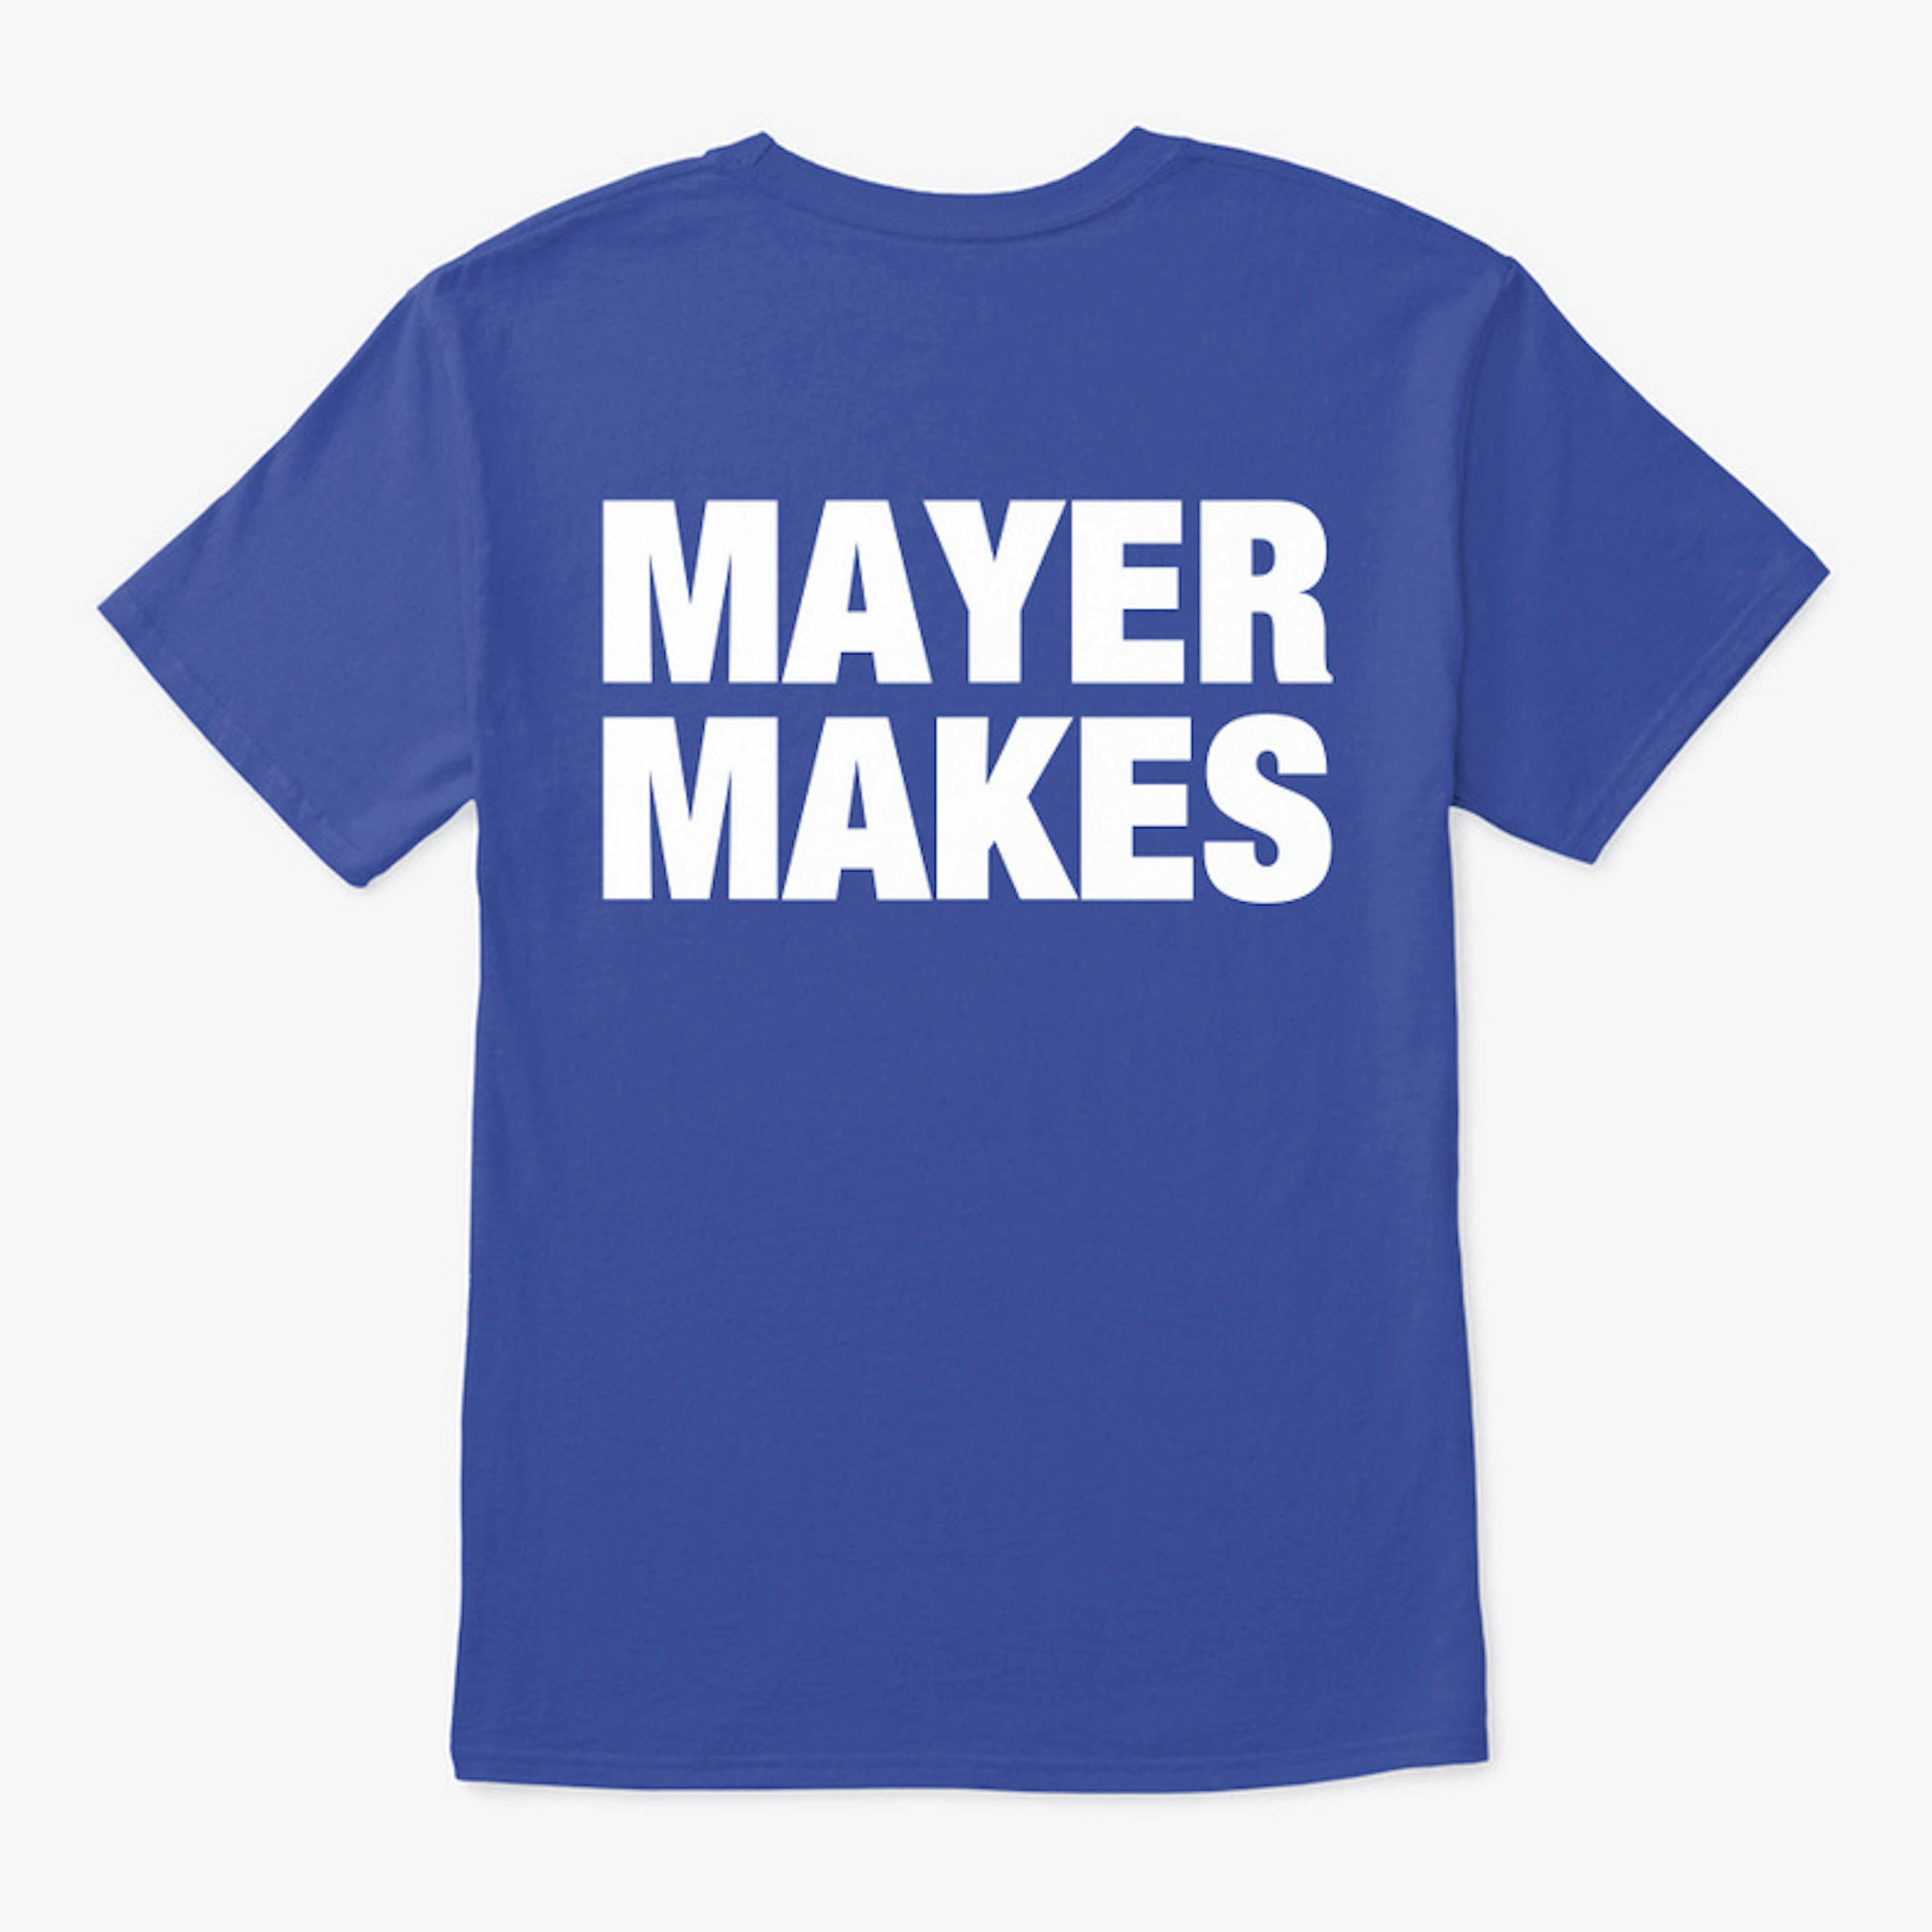 MAYER MAKES Crew 